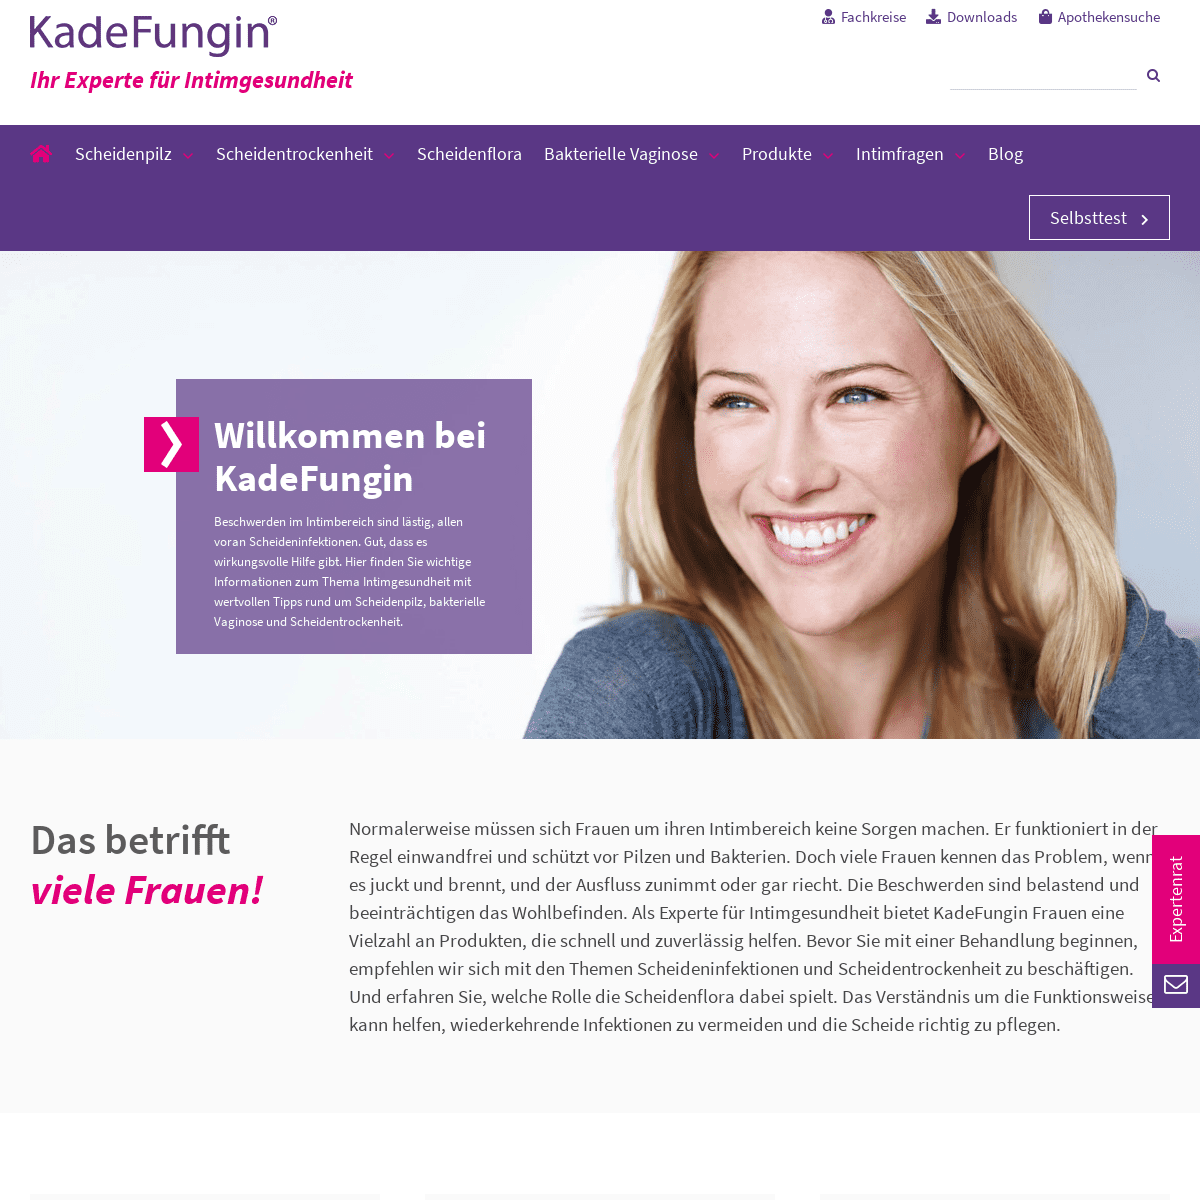 A complete backup of kadefungin.de